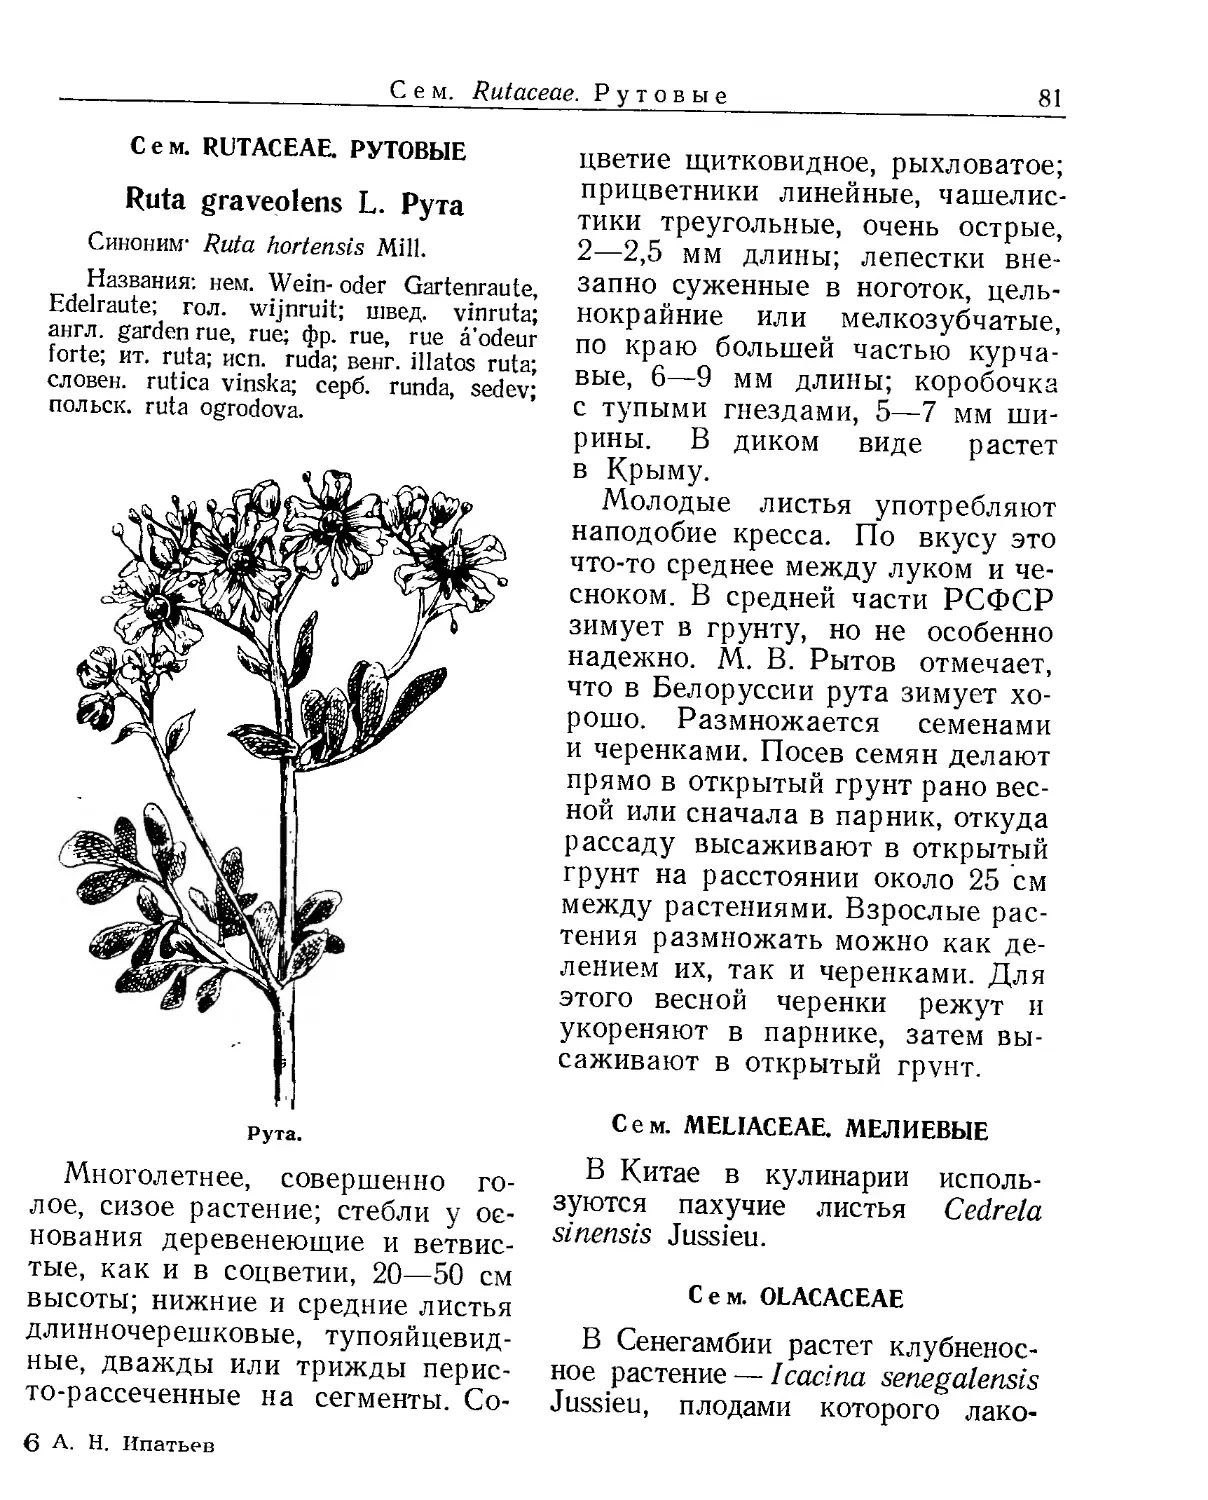 Сем. Rutaceae. Рутовые
Сем. Meliaceae. Мелиевые
Сем. Olacaceae